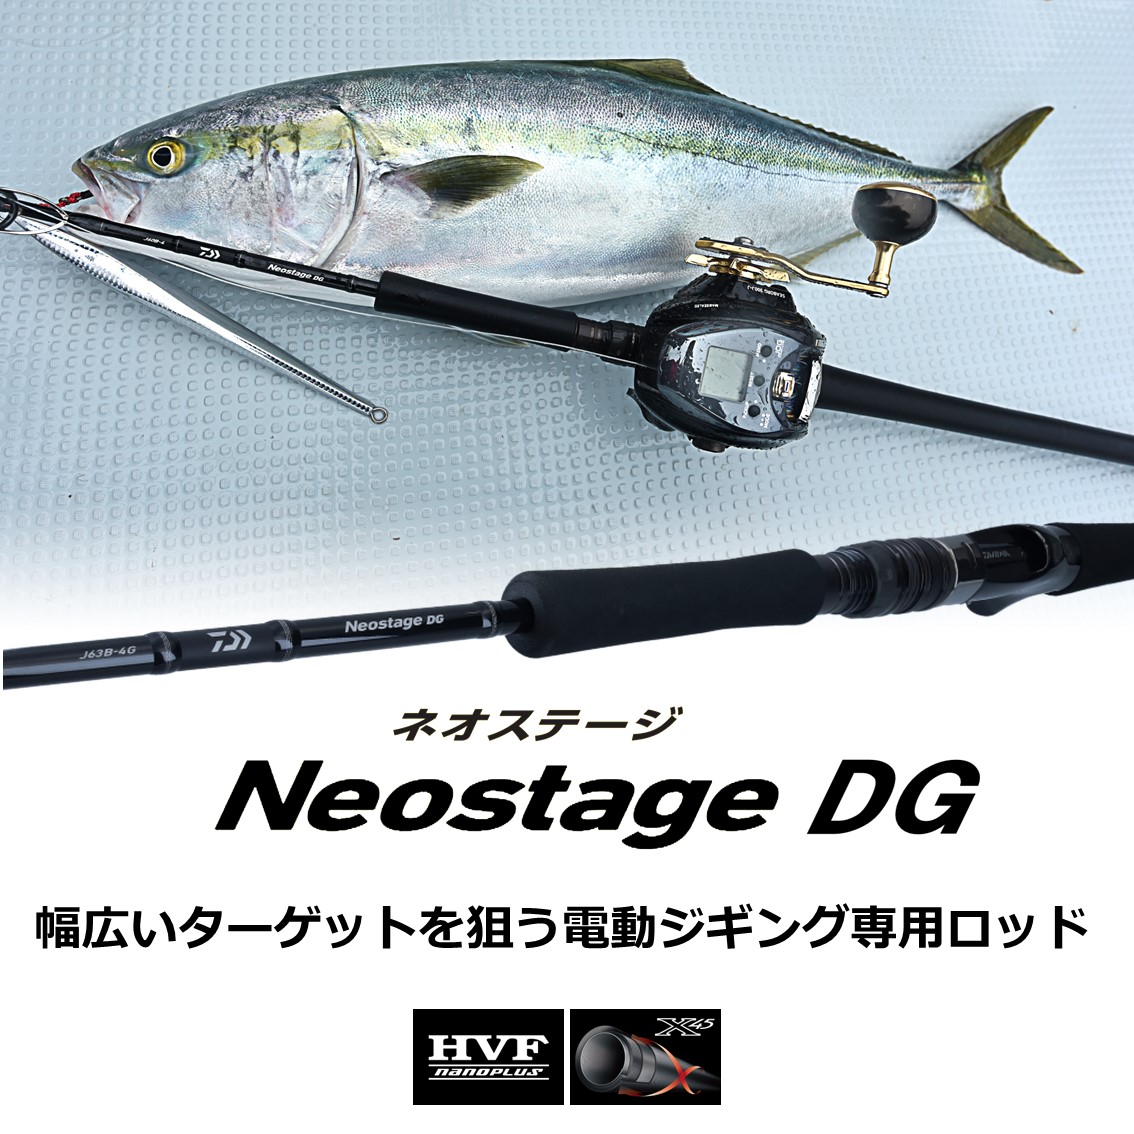 ダイワ ネオステージDG J63B-4G (ジギングロッド) - 釣り具の販売 ...